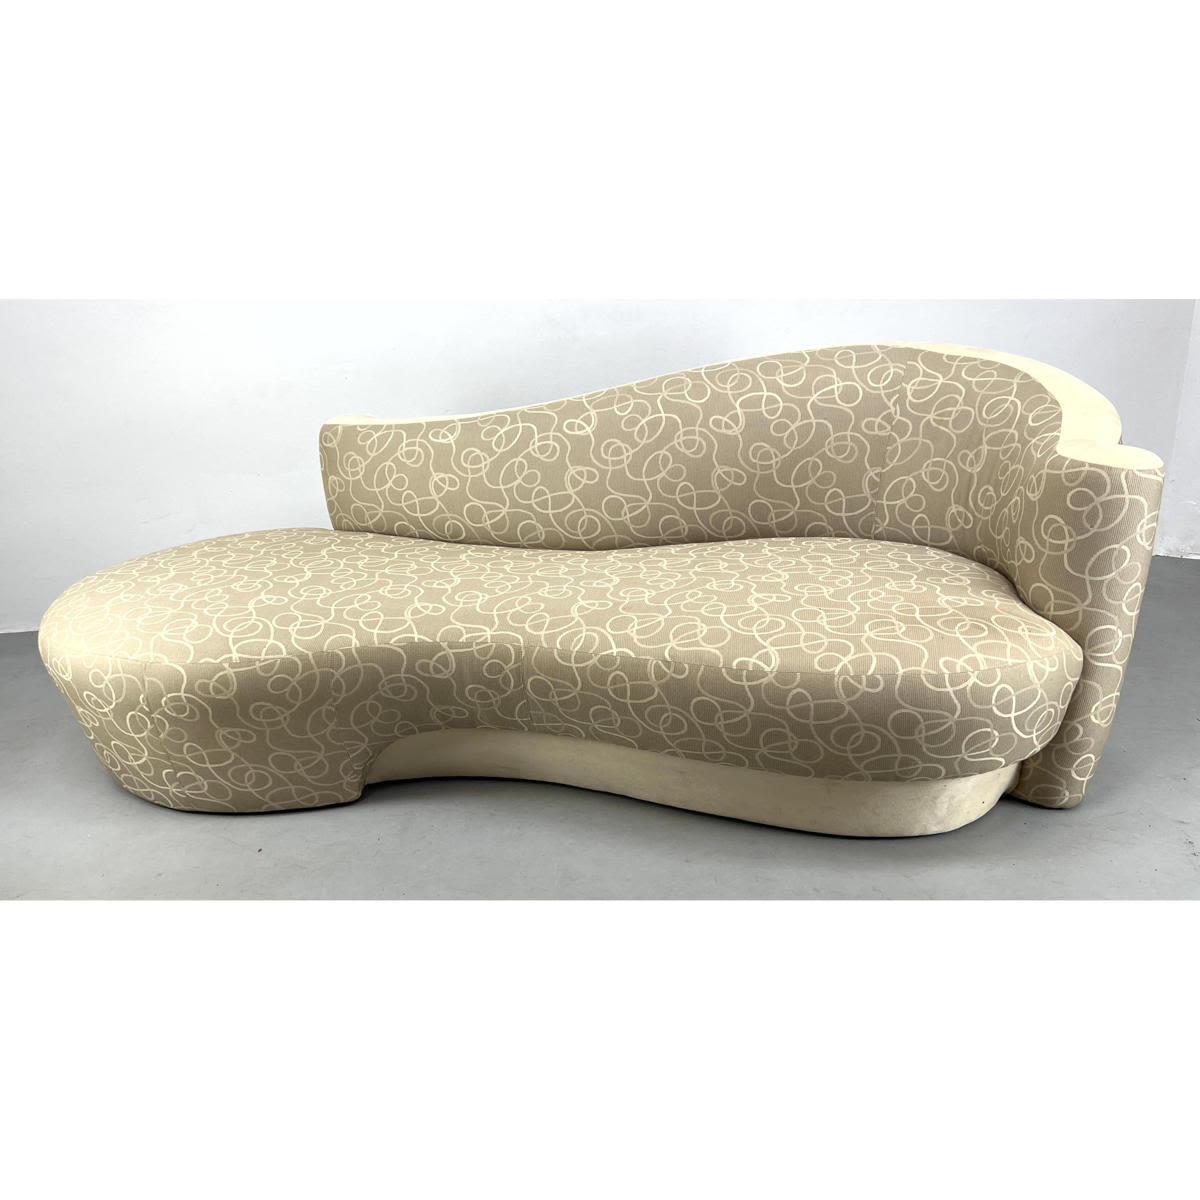 Weiman Kagan style serpentine sofa 2bb068